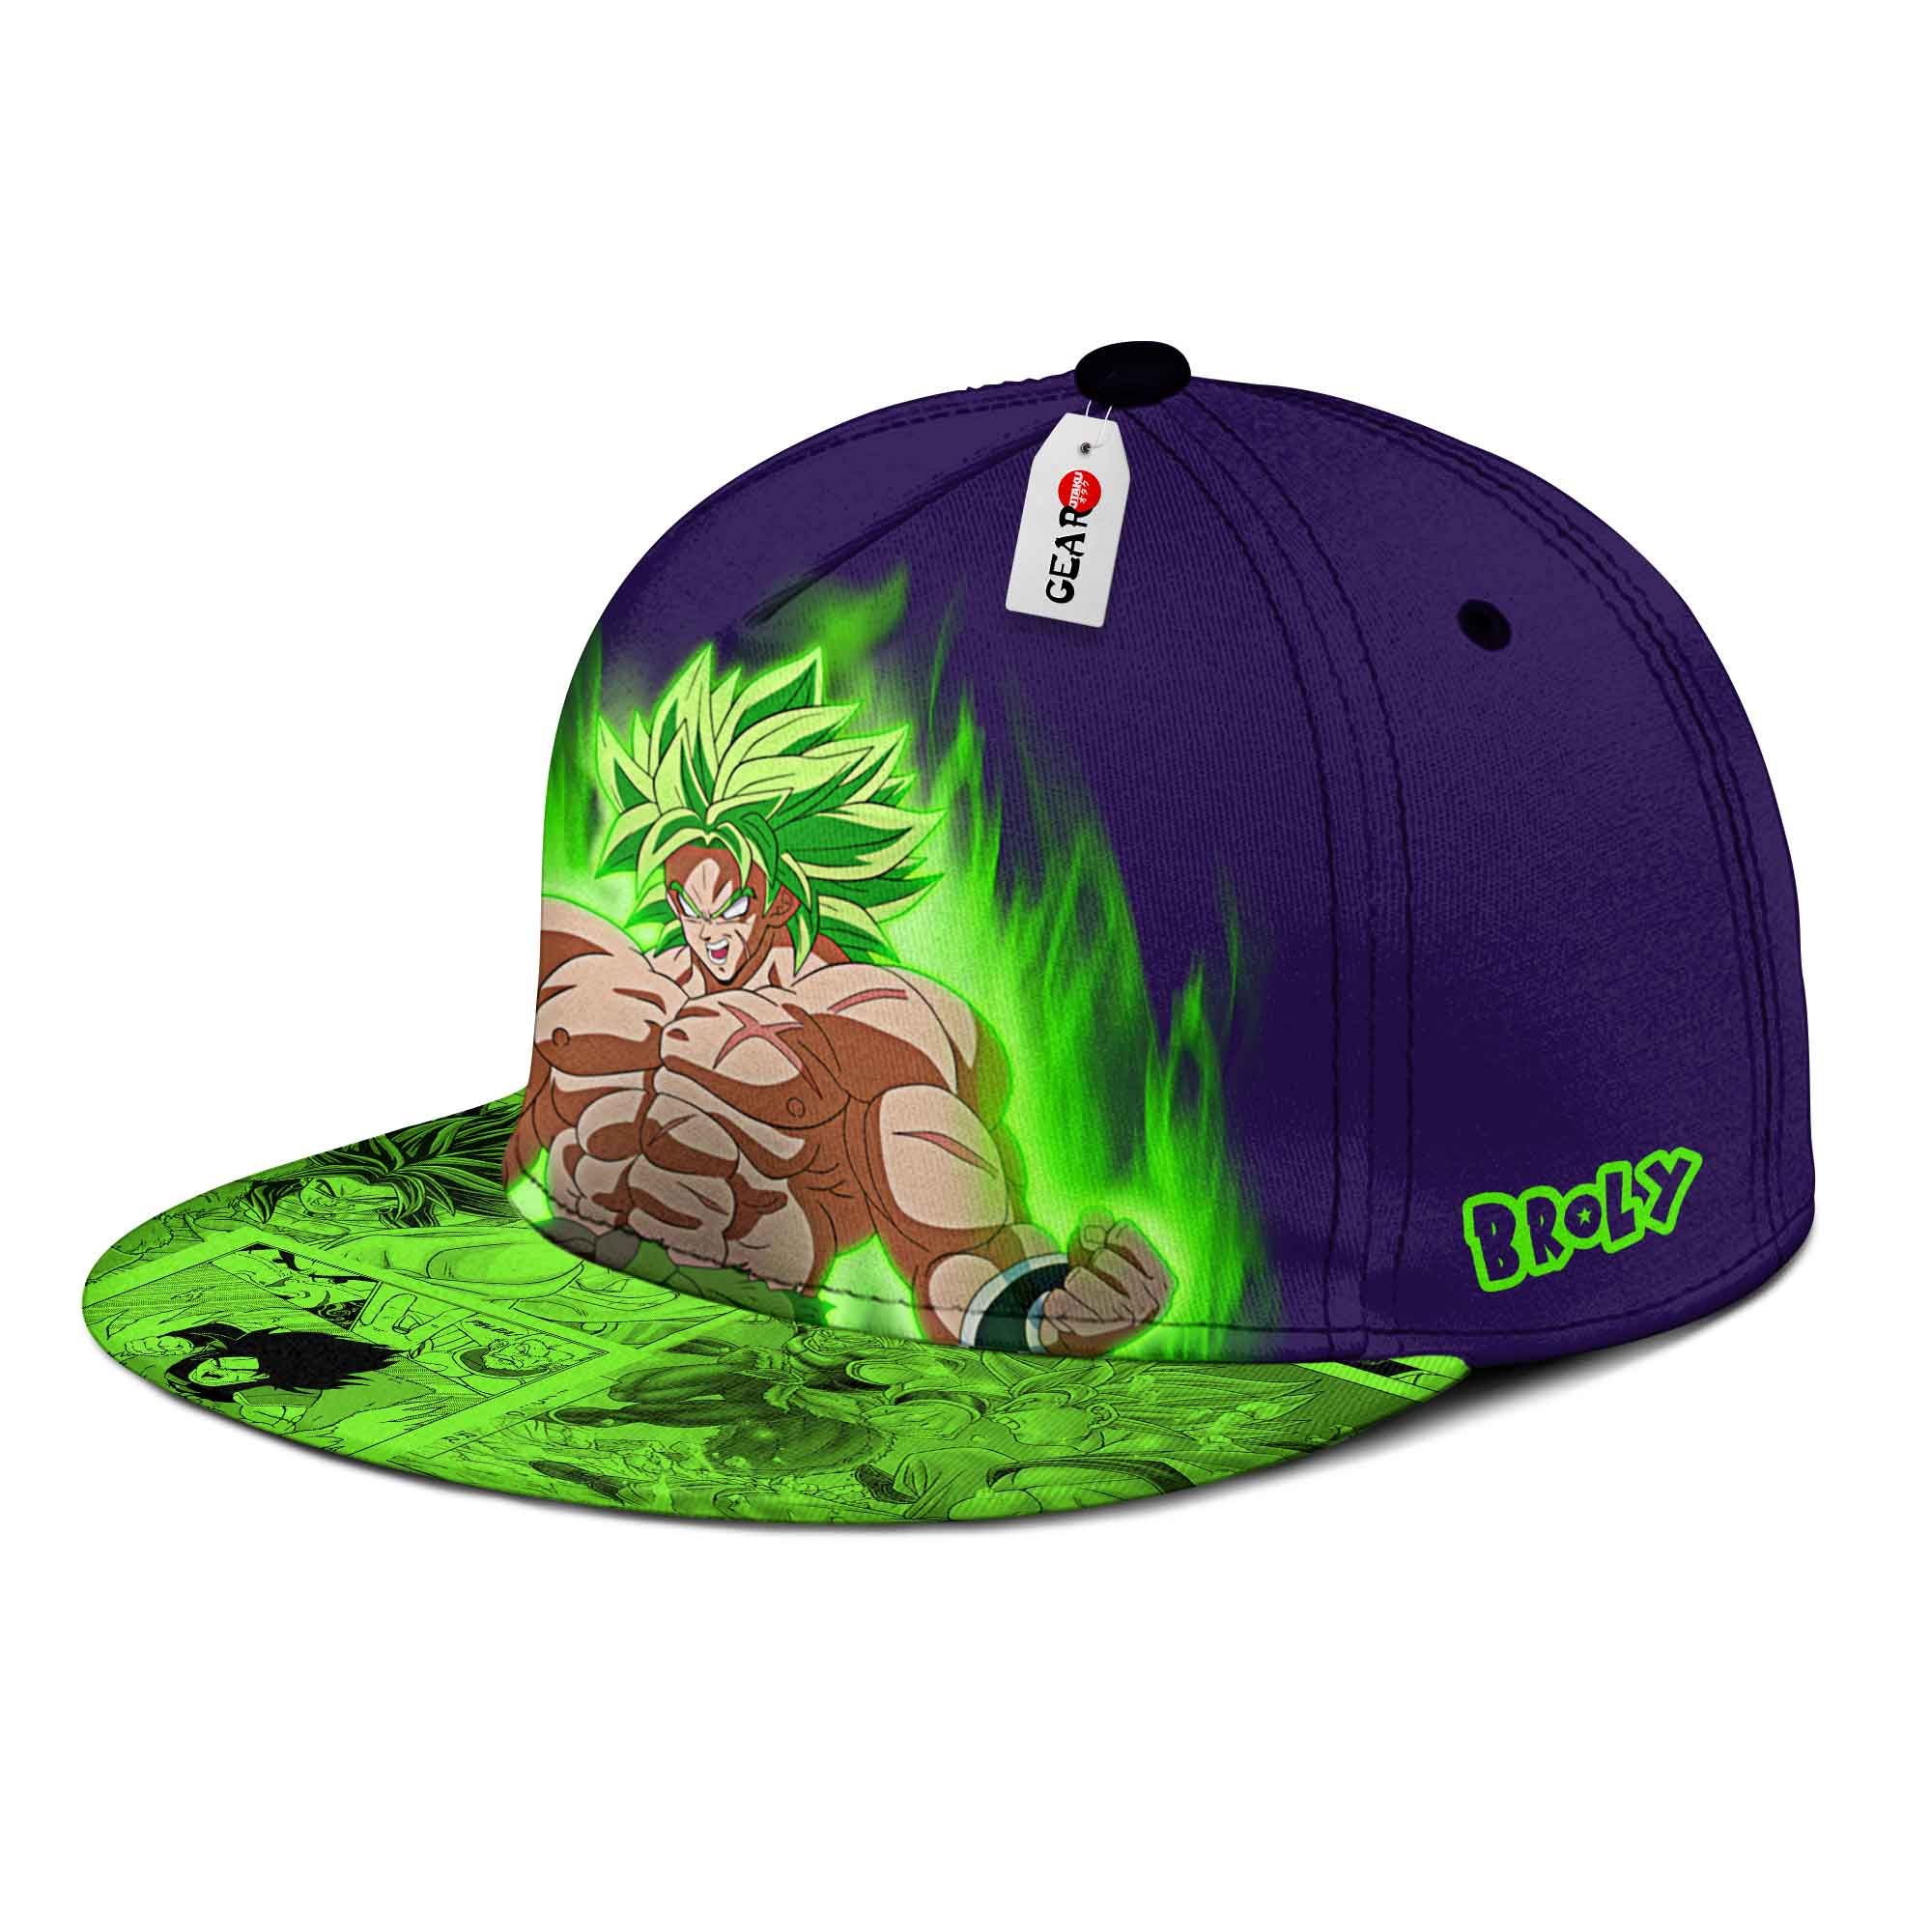 NEW Super Broly Dragon Ball Cap hat2